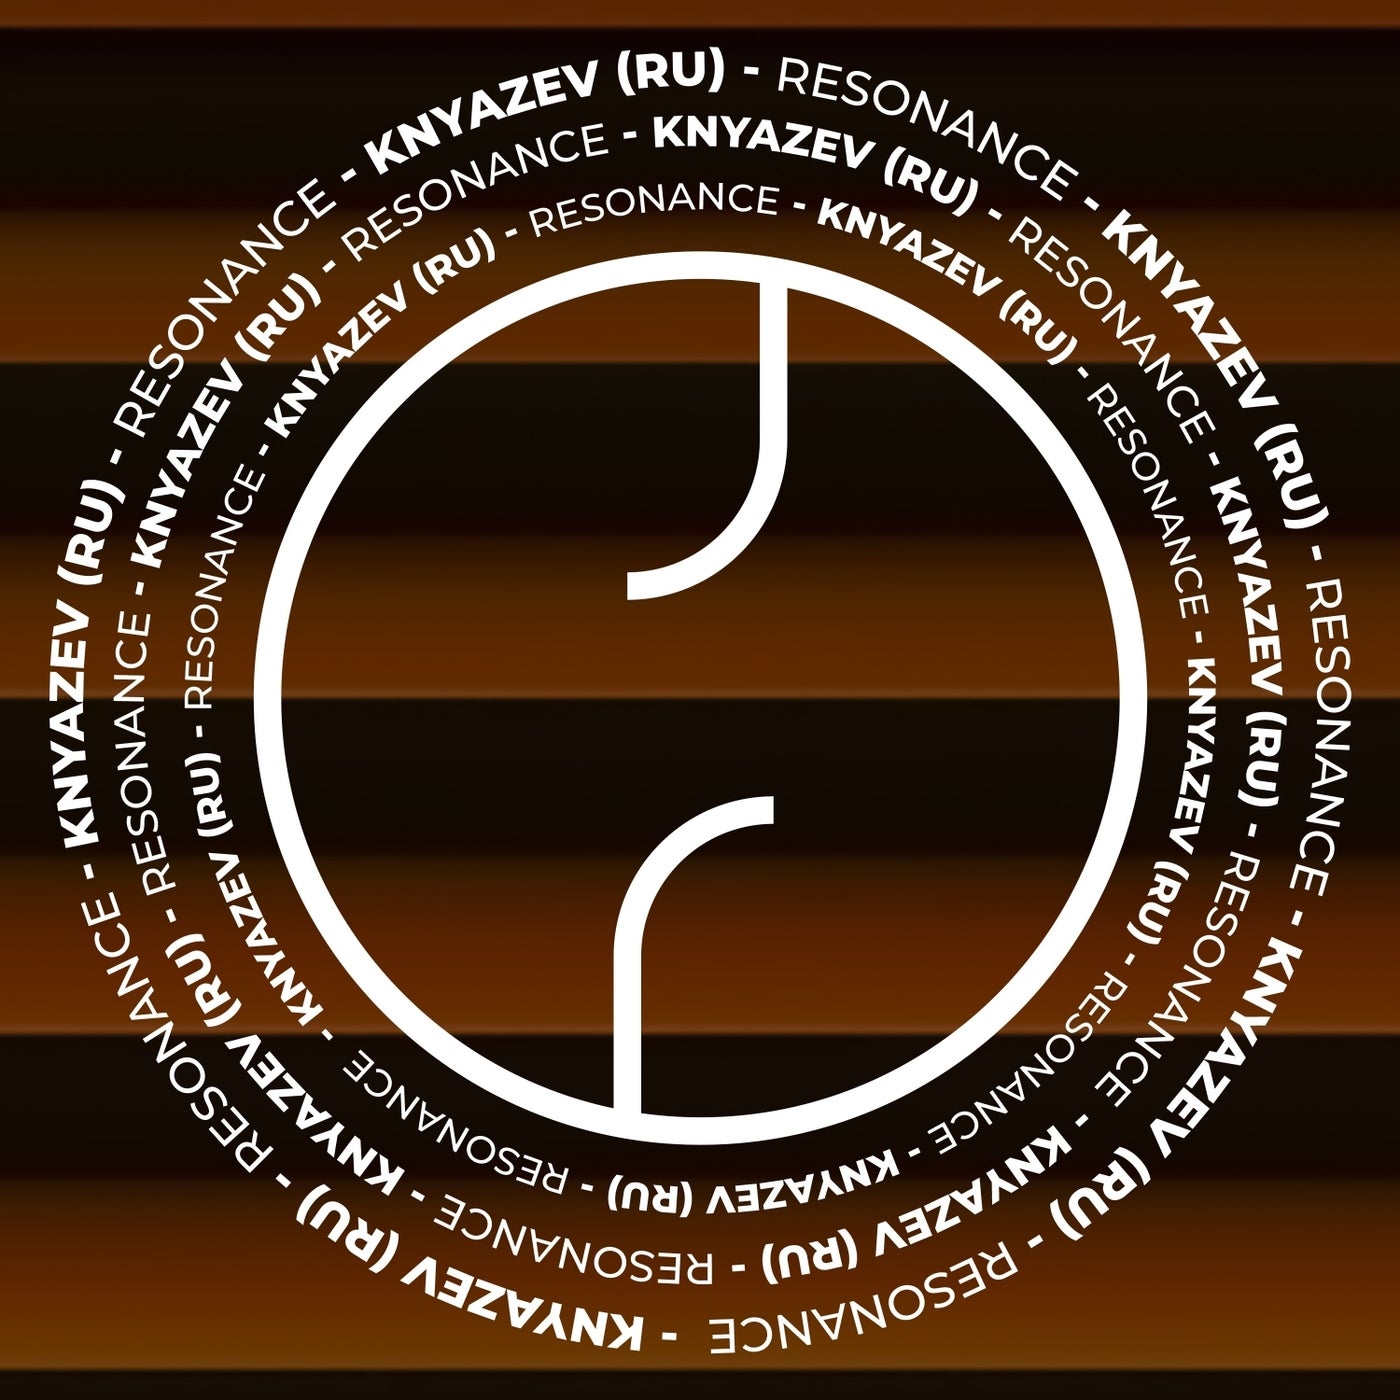 Knyazev (RU) – Resonance [RPRT009]